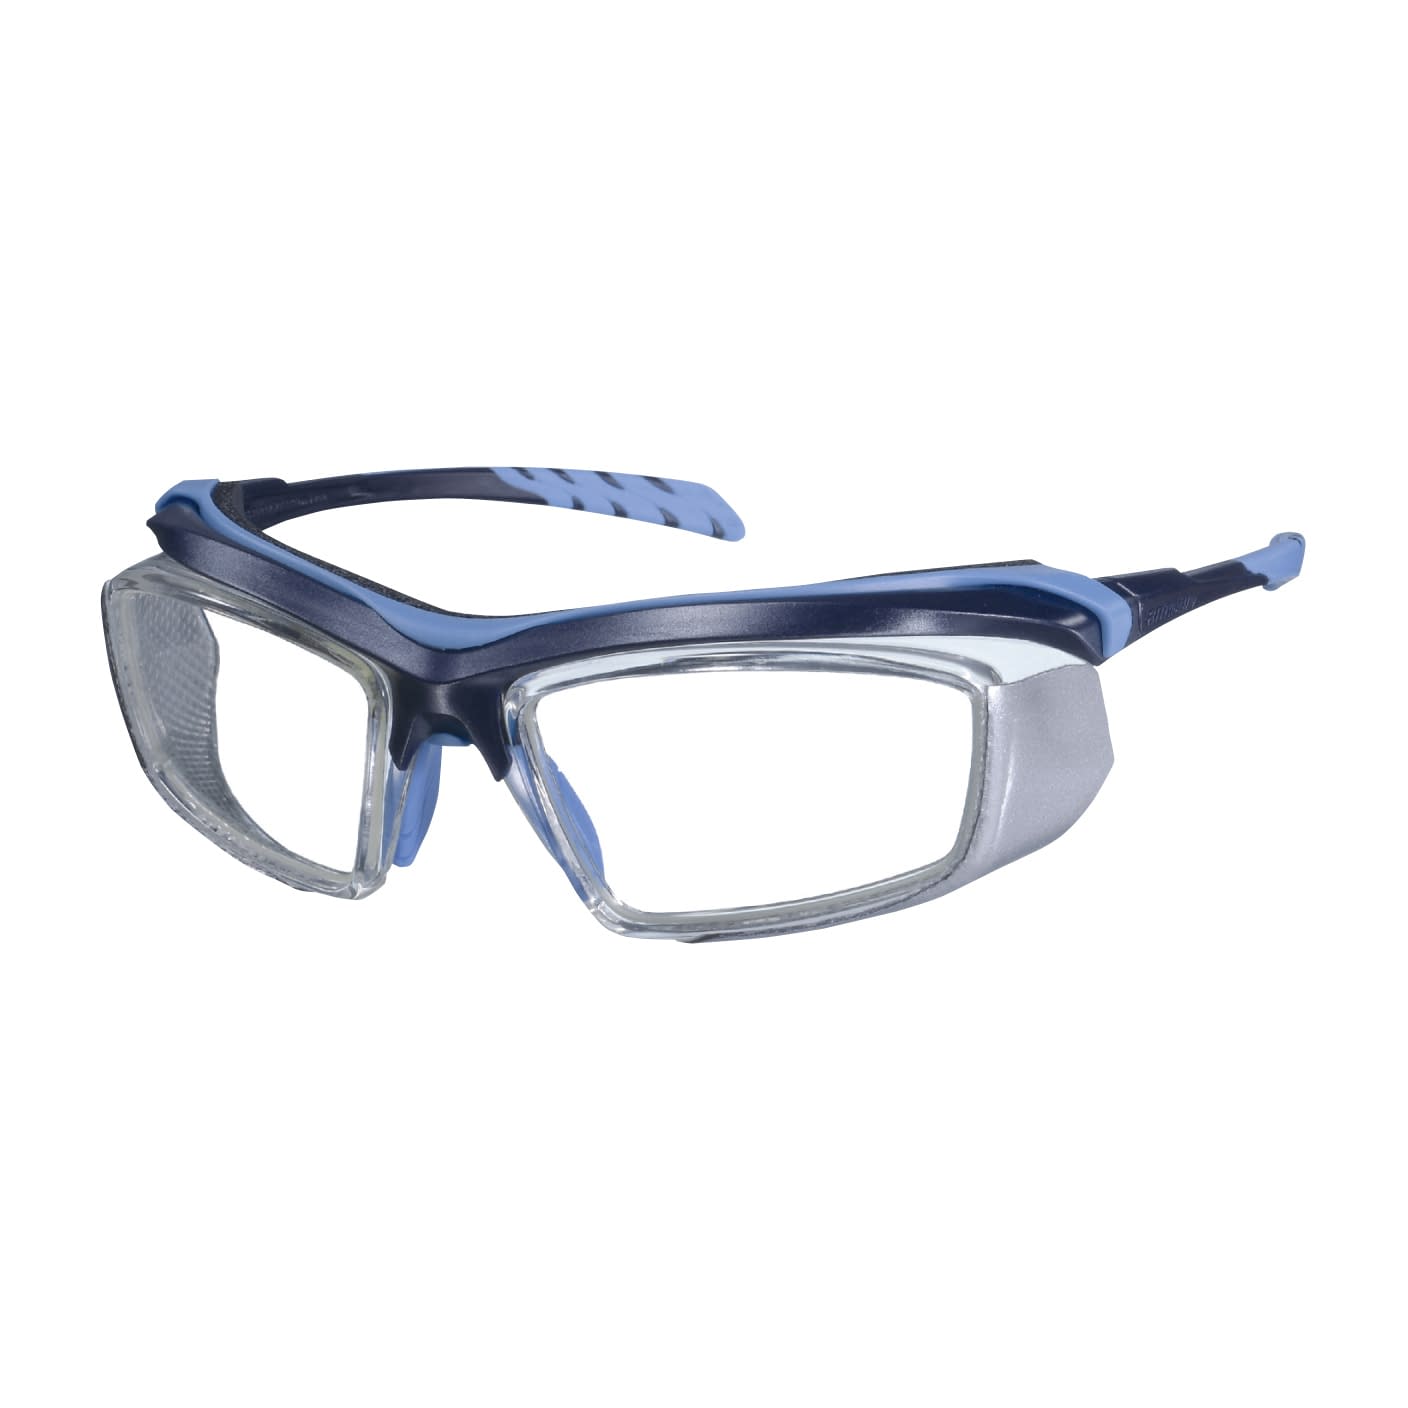 放射線防護眼鏡プロテックアイウェア PT-CMT-B(ブルー)PT-CMT-B(ﾌﾞﾙｰ)(24-8501-00)【マエダ】(販売単位:1)